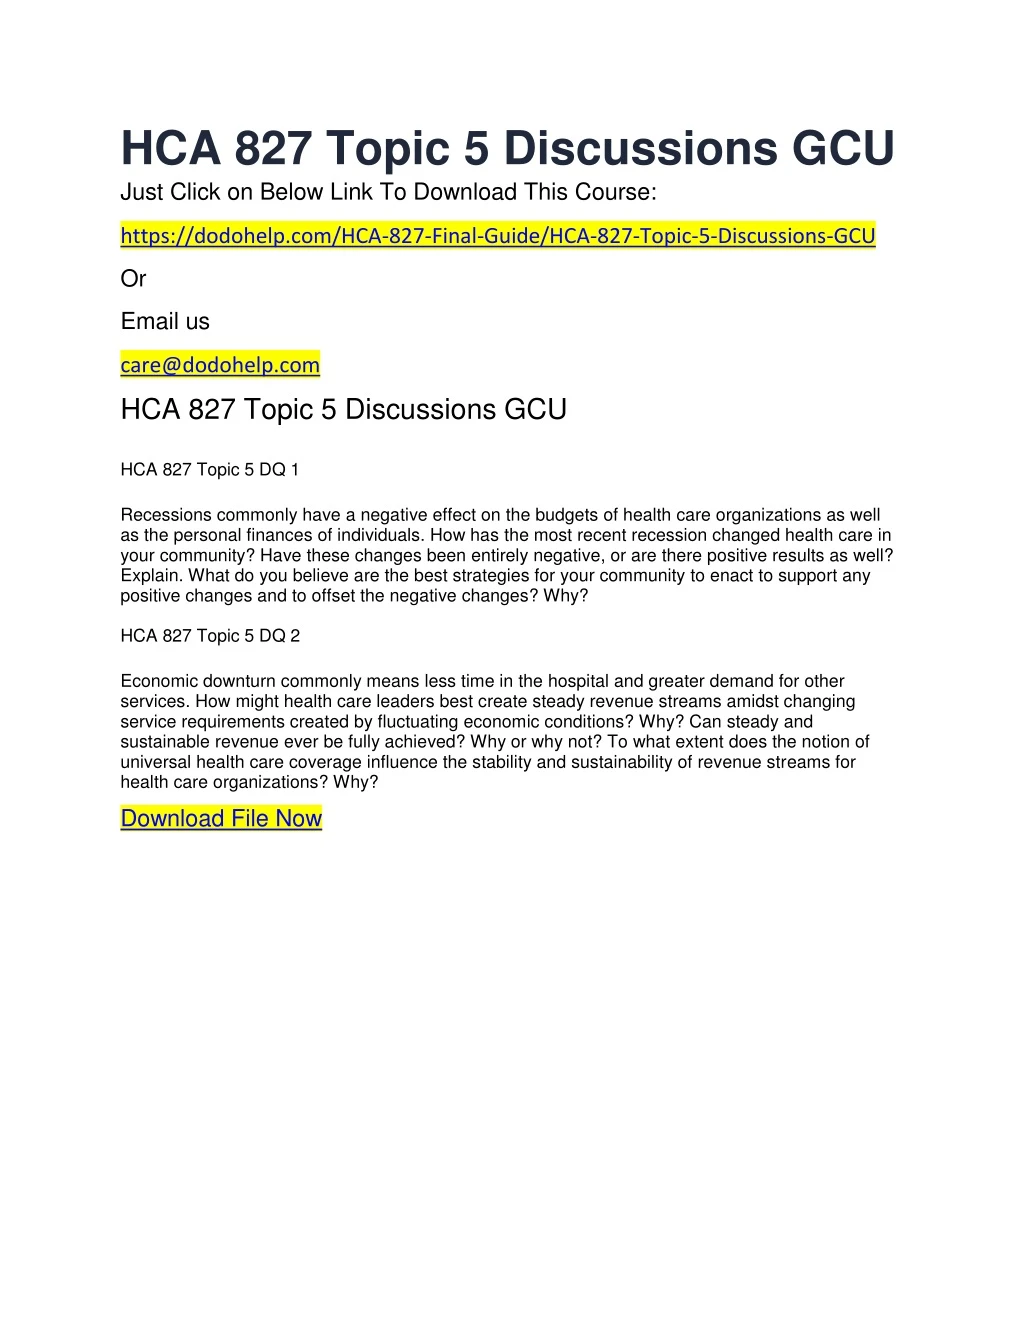 hca 827 topic 5 discussions gcu just click